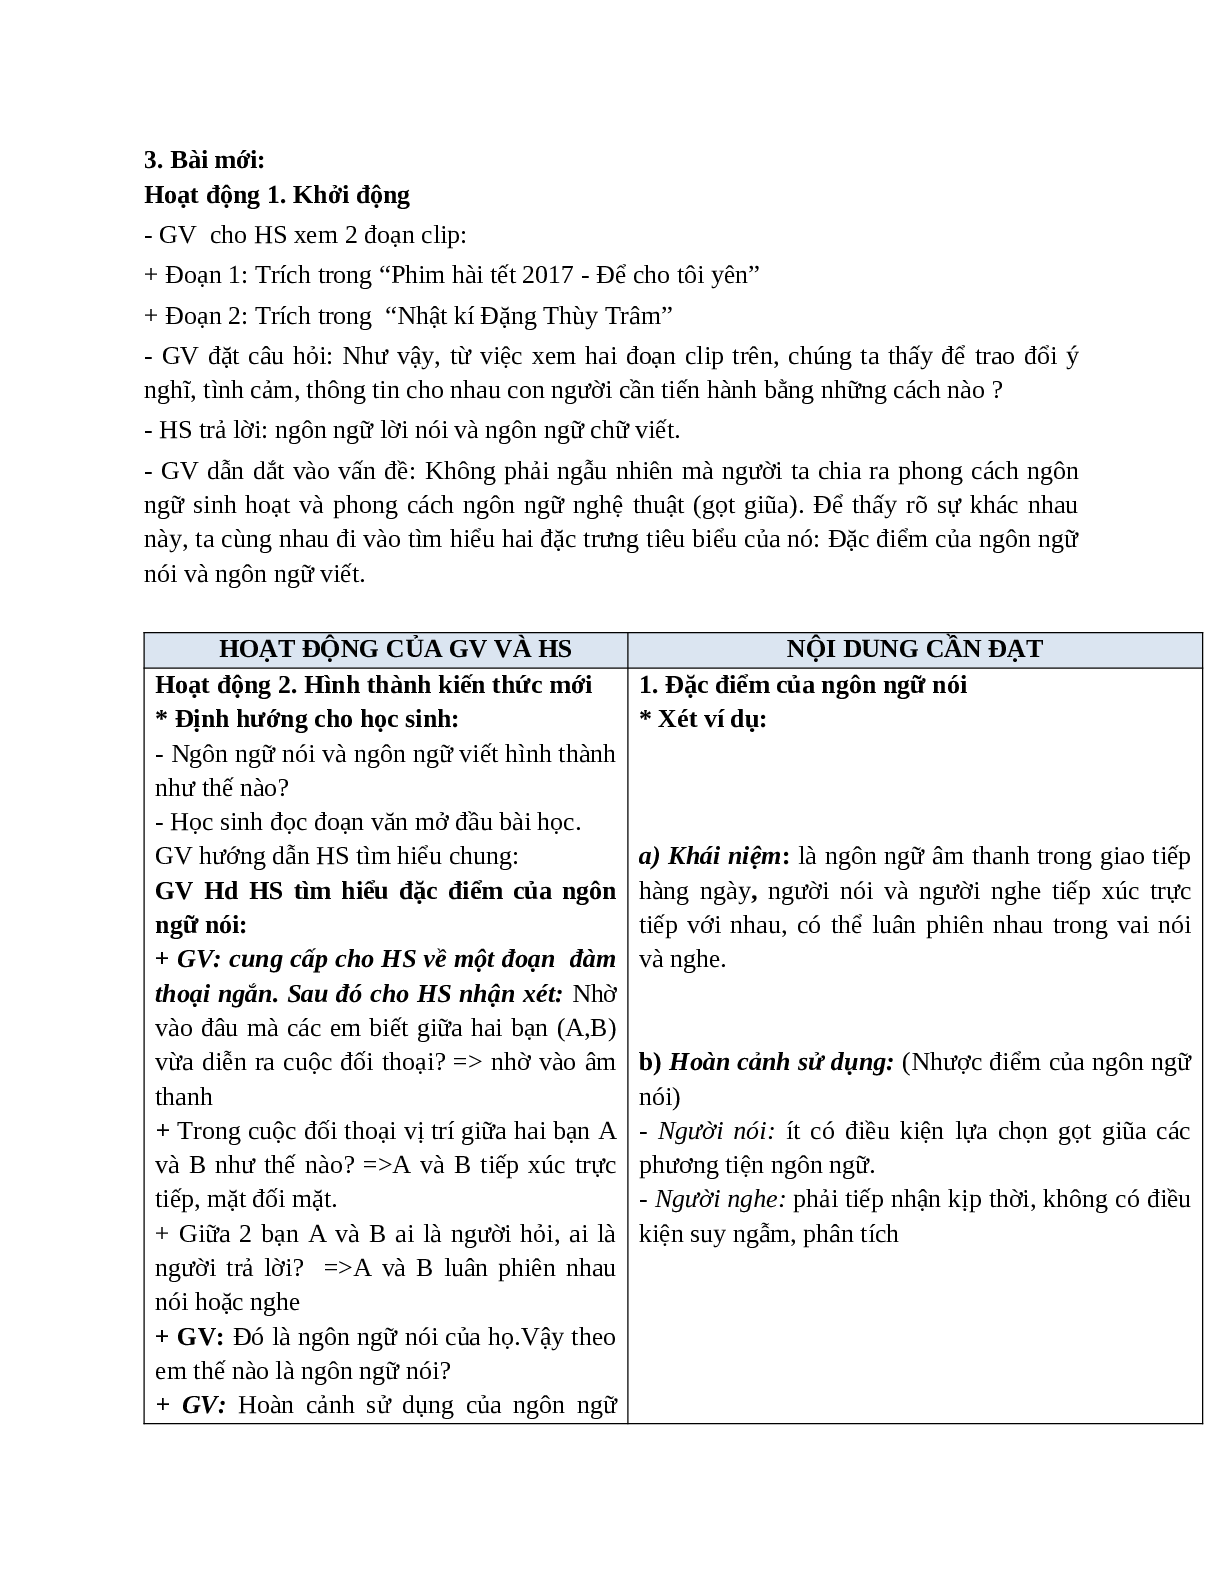 Giáo án Ngữ văn 10 tập 1 bài Đặc điểm của ngôn ngữ nói và ngôn ngữ viết mới nhất (trang 2)